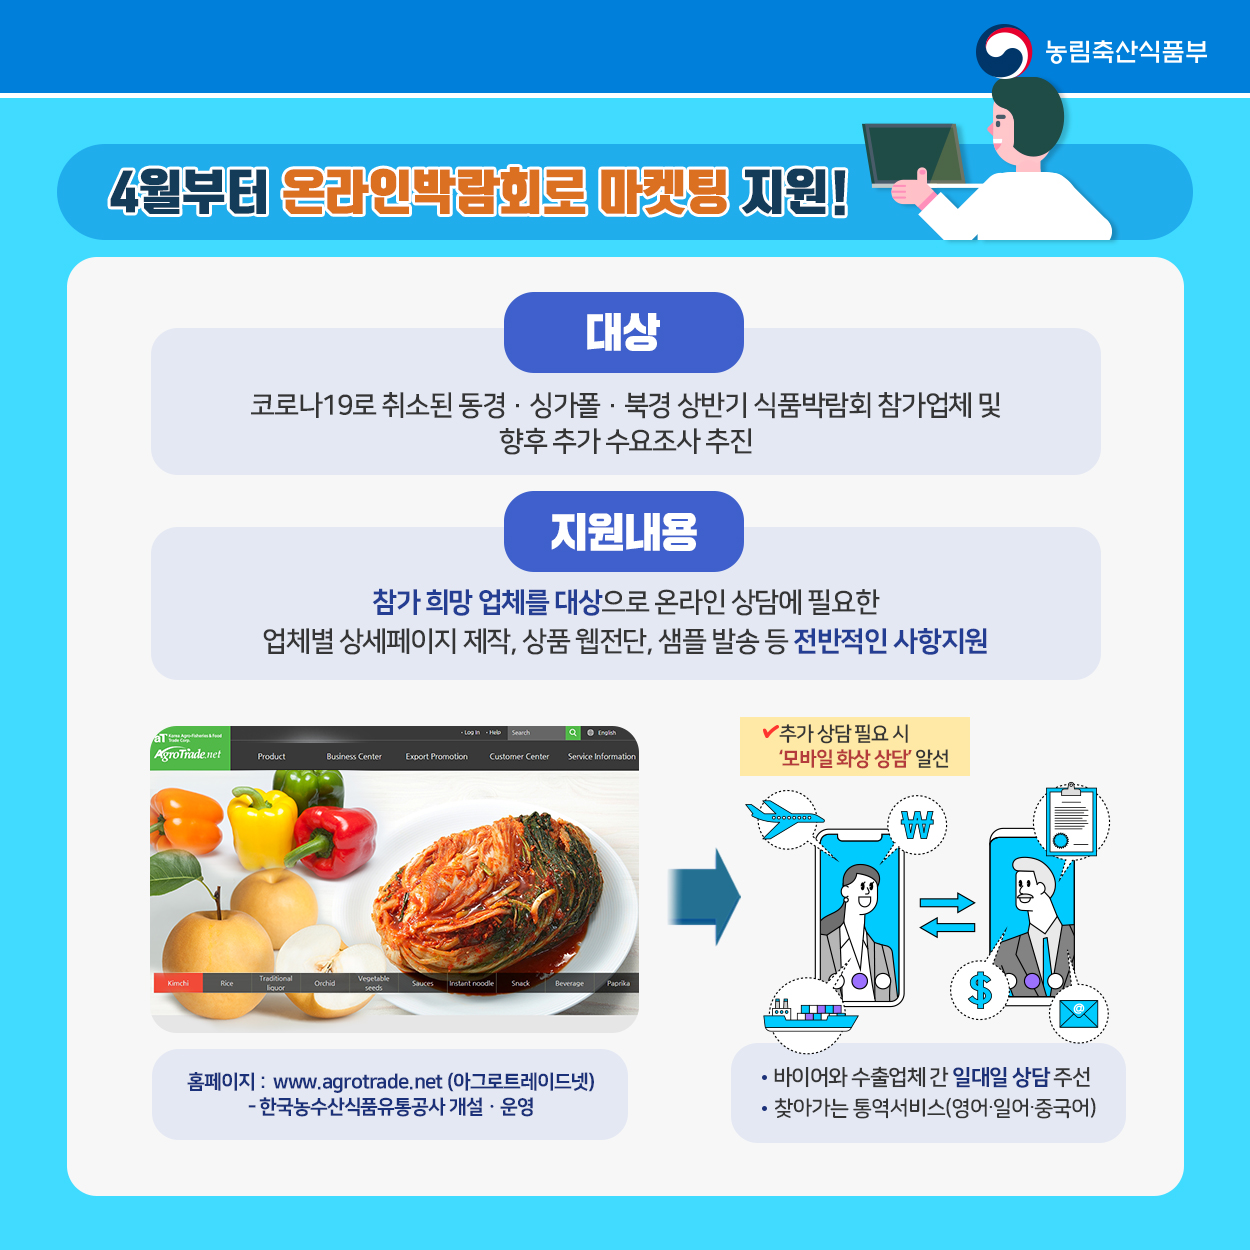 코로나 19! 농식품 온라인 수출로 극복~ 농식품부_카드뉴스_온라인수출03_200323.jpg